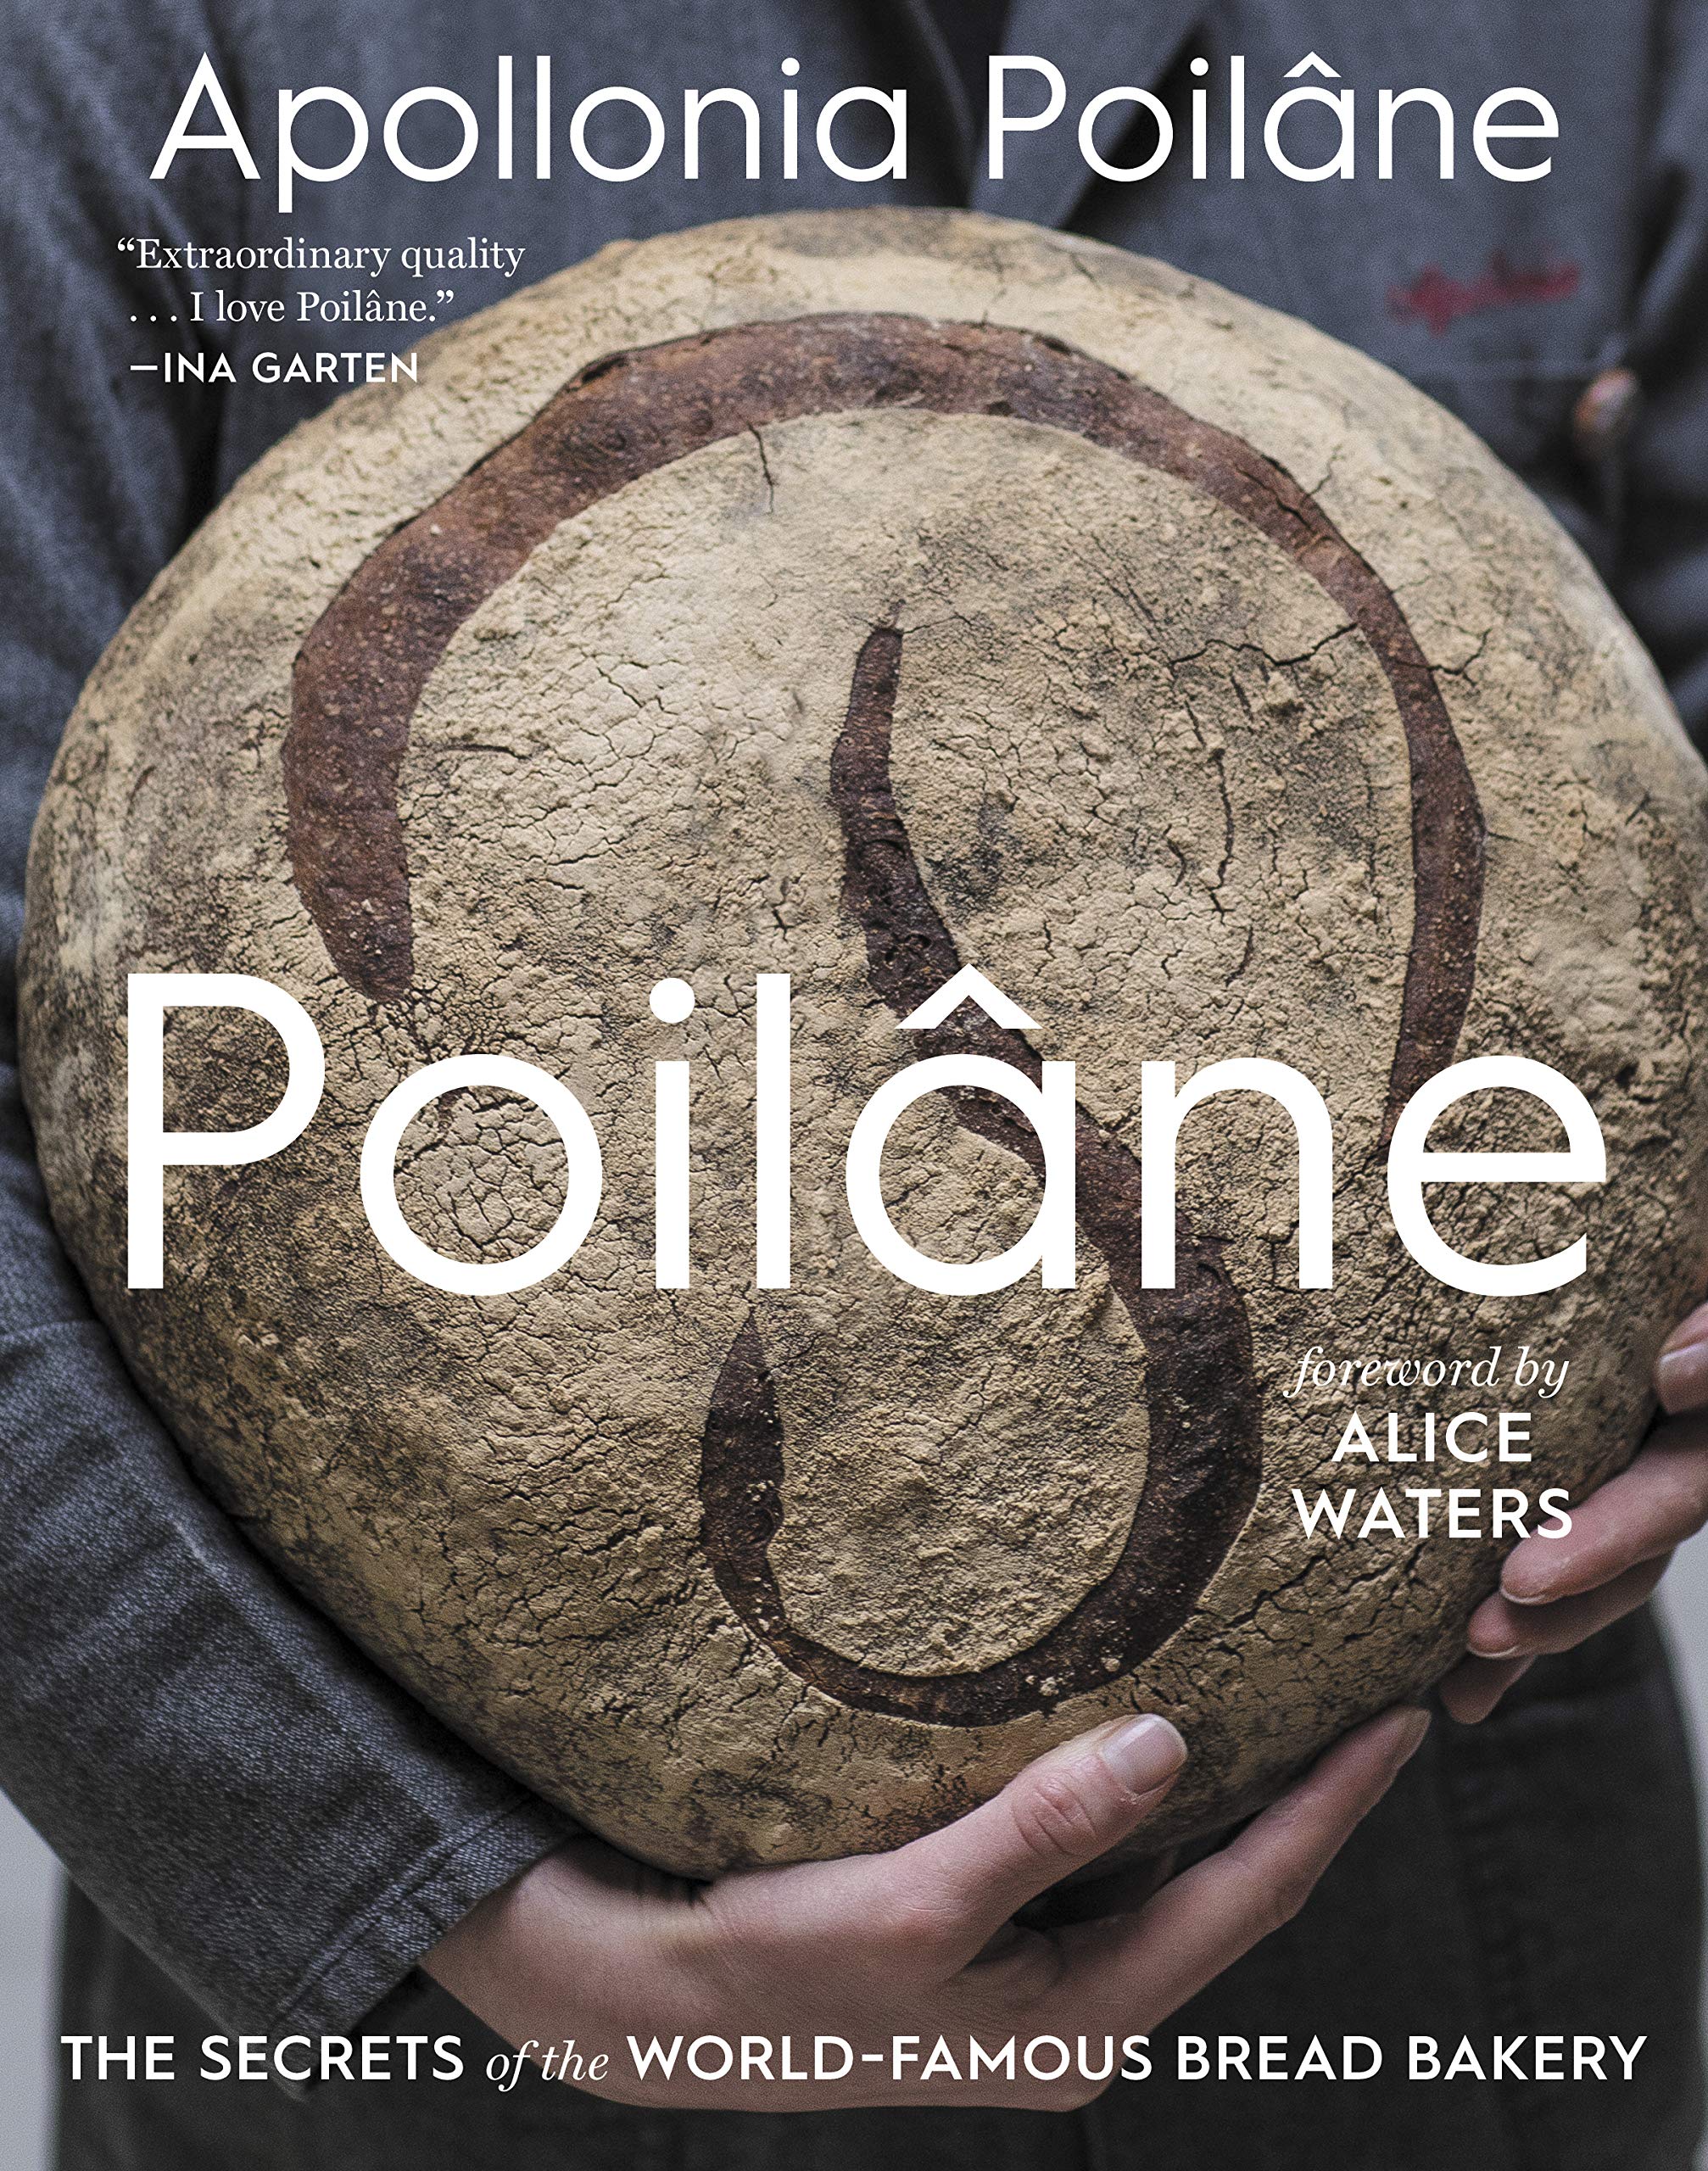 Poilâne: The Secrets of the World-Famous Bread Bakery (Apollonia Poilâne)